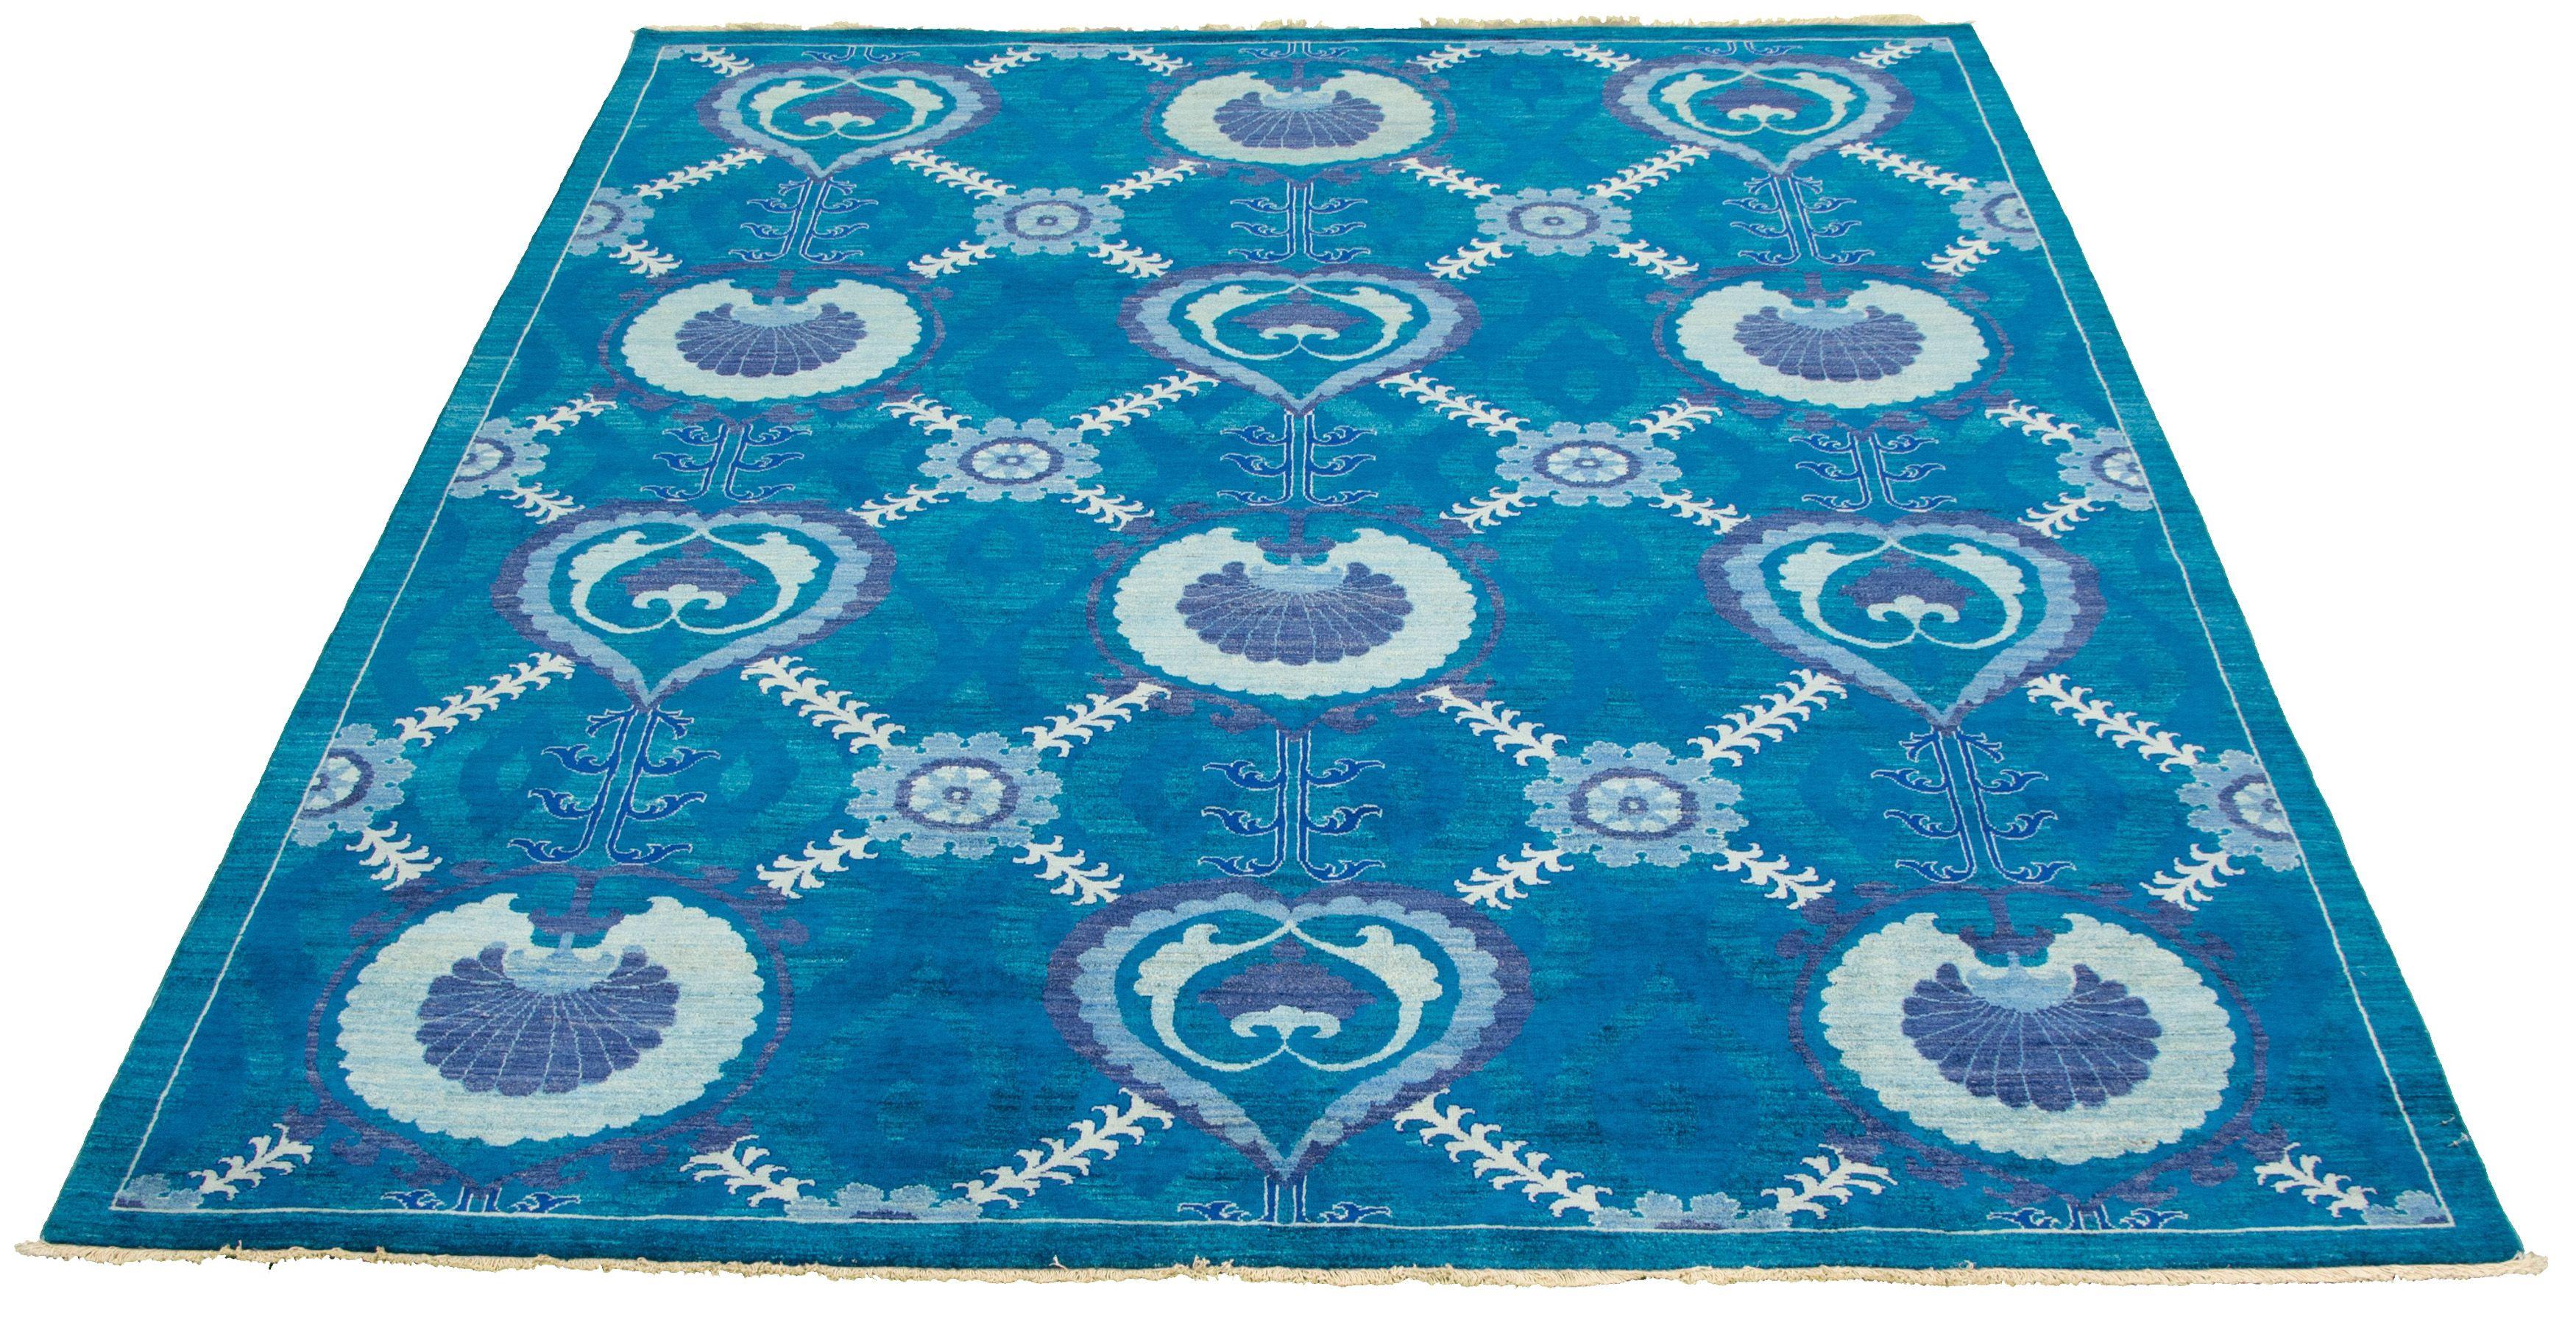 Dieser Oushak-Teppich in leuchtenden blauen Aquatönen ist 8' x 10' groß und gehört zur Orley Shabahang Market Collection. Einzigartig mit seinem großflächigen und sich wiederholenden Design, schlägt dieser Teppich eine Brücke zwischen dem